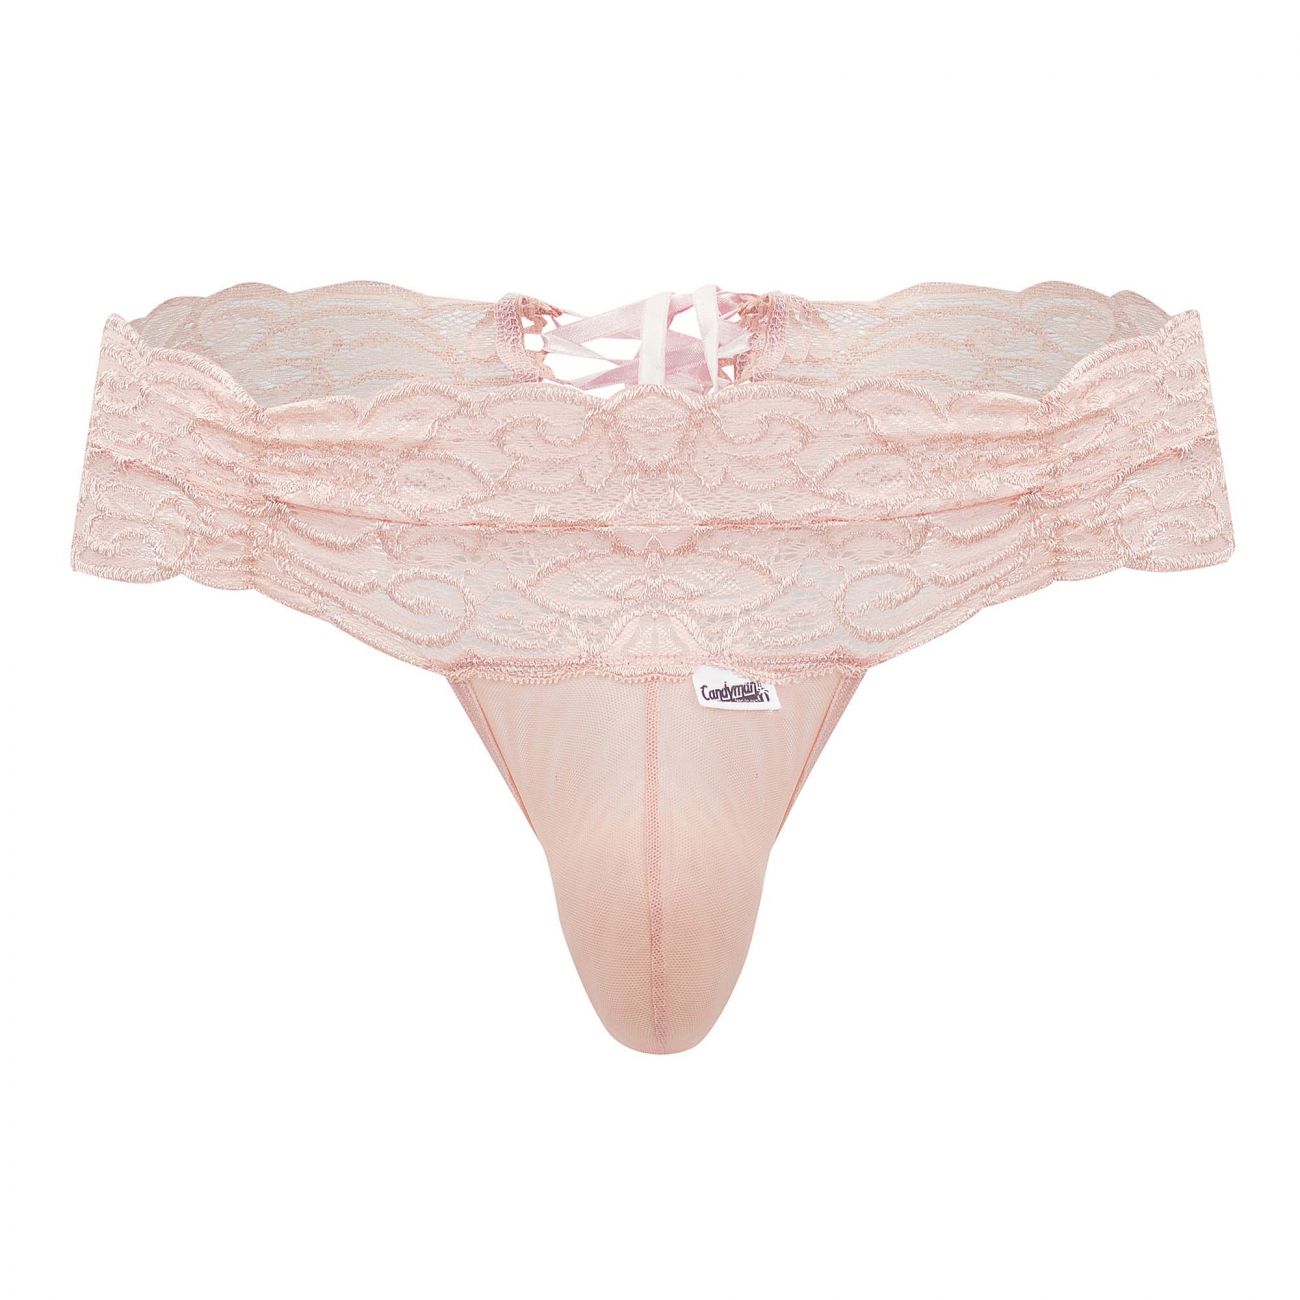 JCSTK - CandyMan 99595X Floral Lace Thongs Rose Plus Sizes